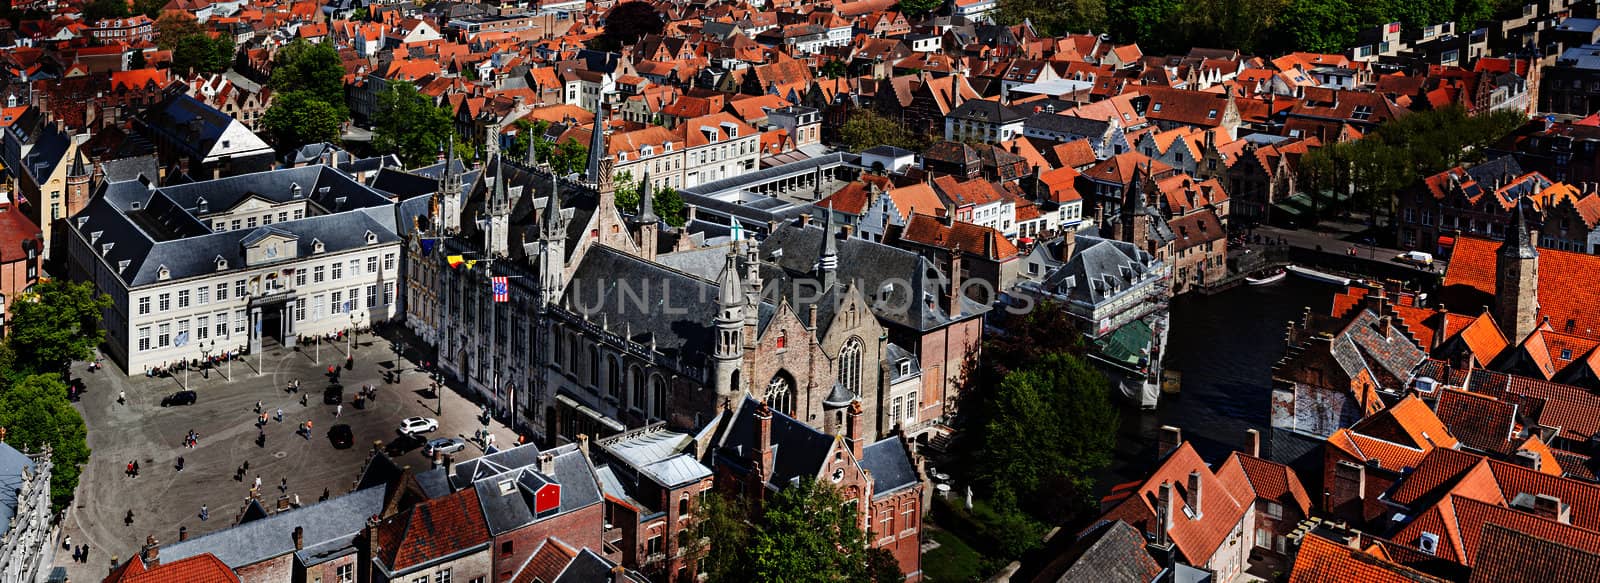 Panorama of aerial view of Bruges (Brugge), Belgium by dimol